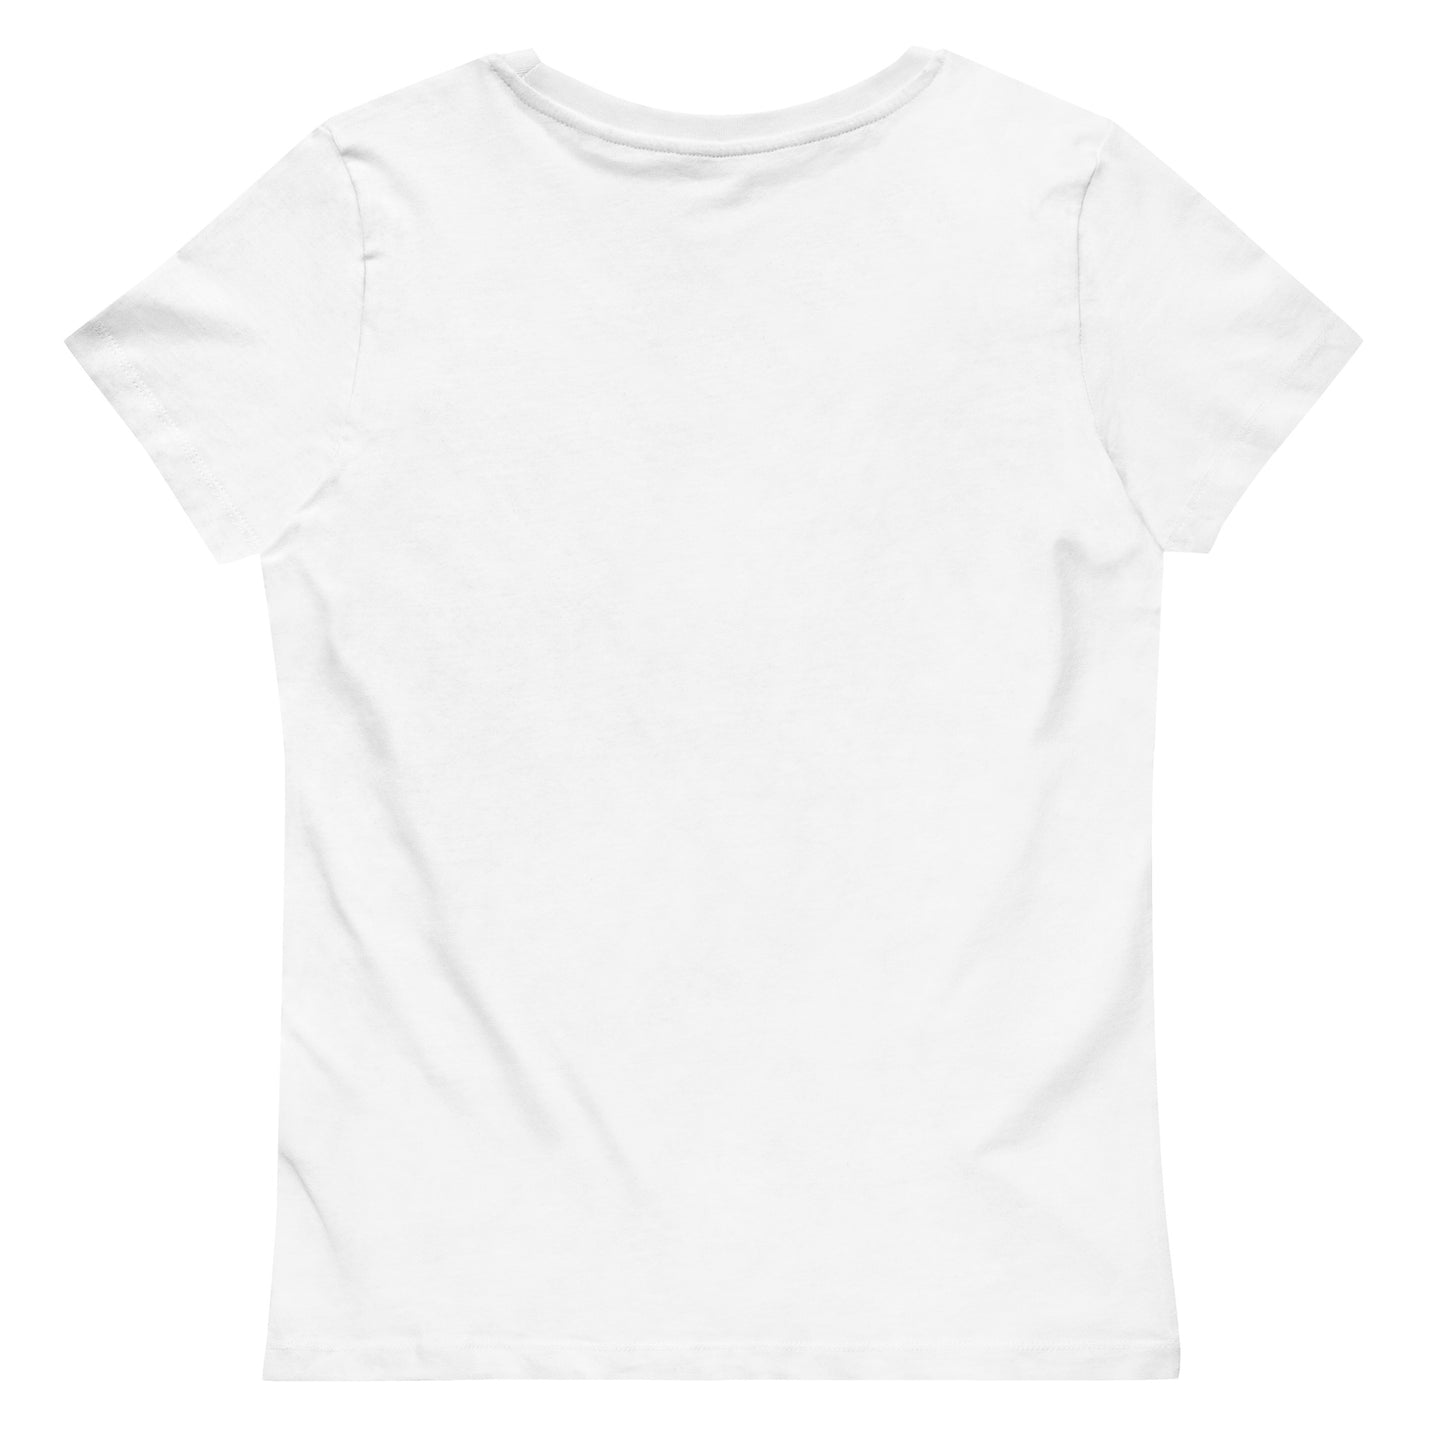 Menkrav Initiate tight-fitting t-shirt white